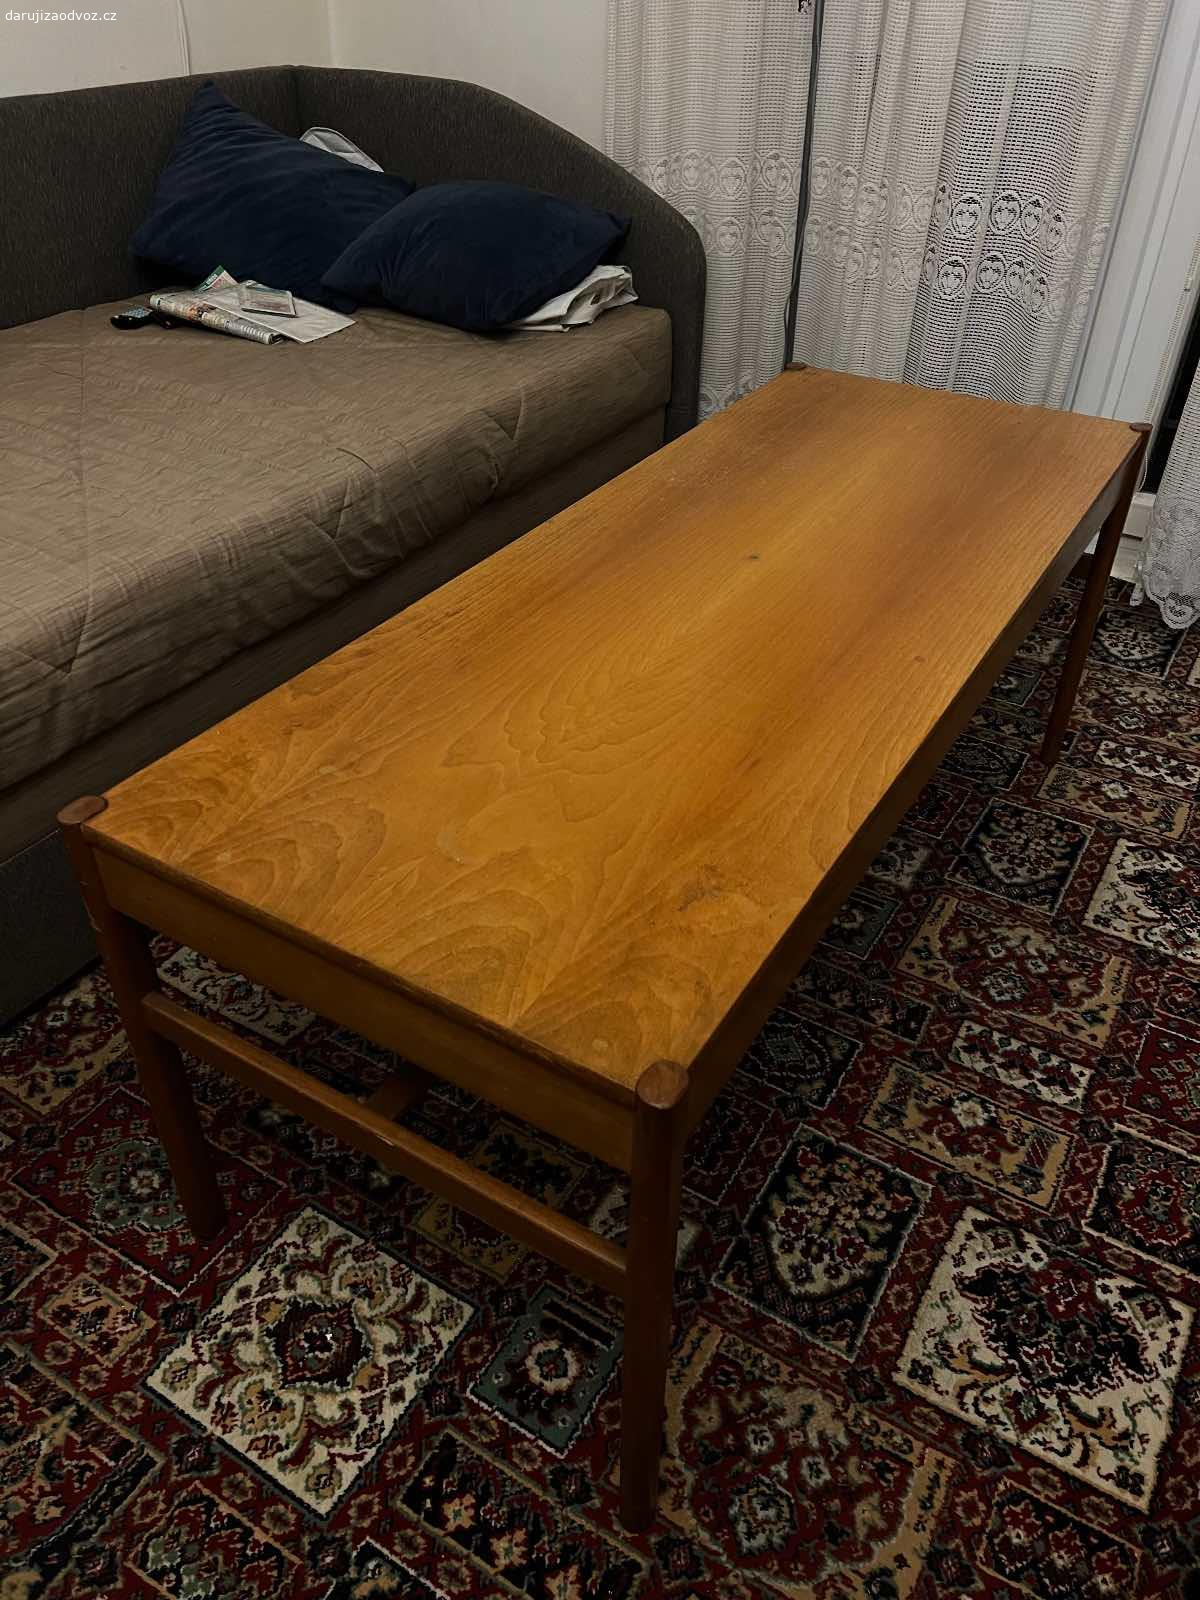 Dřevěný stůl. Vyměním dřevěný stůl za sklenici medu.

Starý a kvalitní dřevěný stůl. 
Ideální pro ubrus nebo super pro lehkou renovaci. 

Osobní vyzvednutí Palmovka, Praha 8